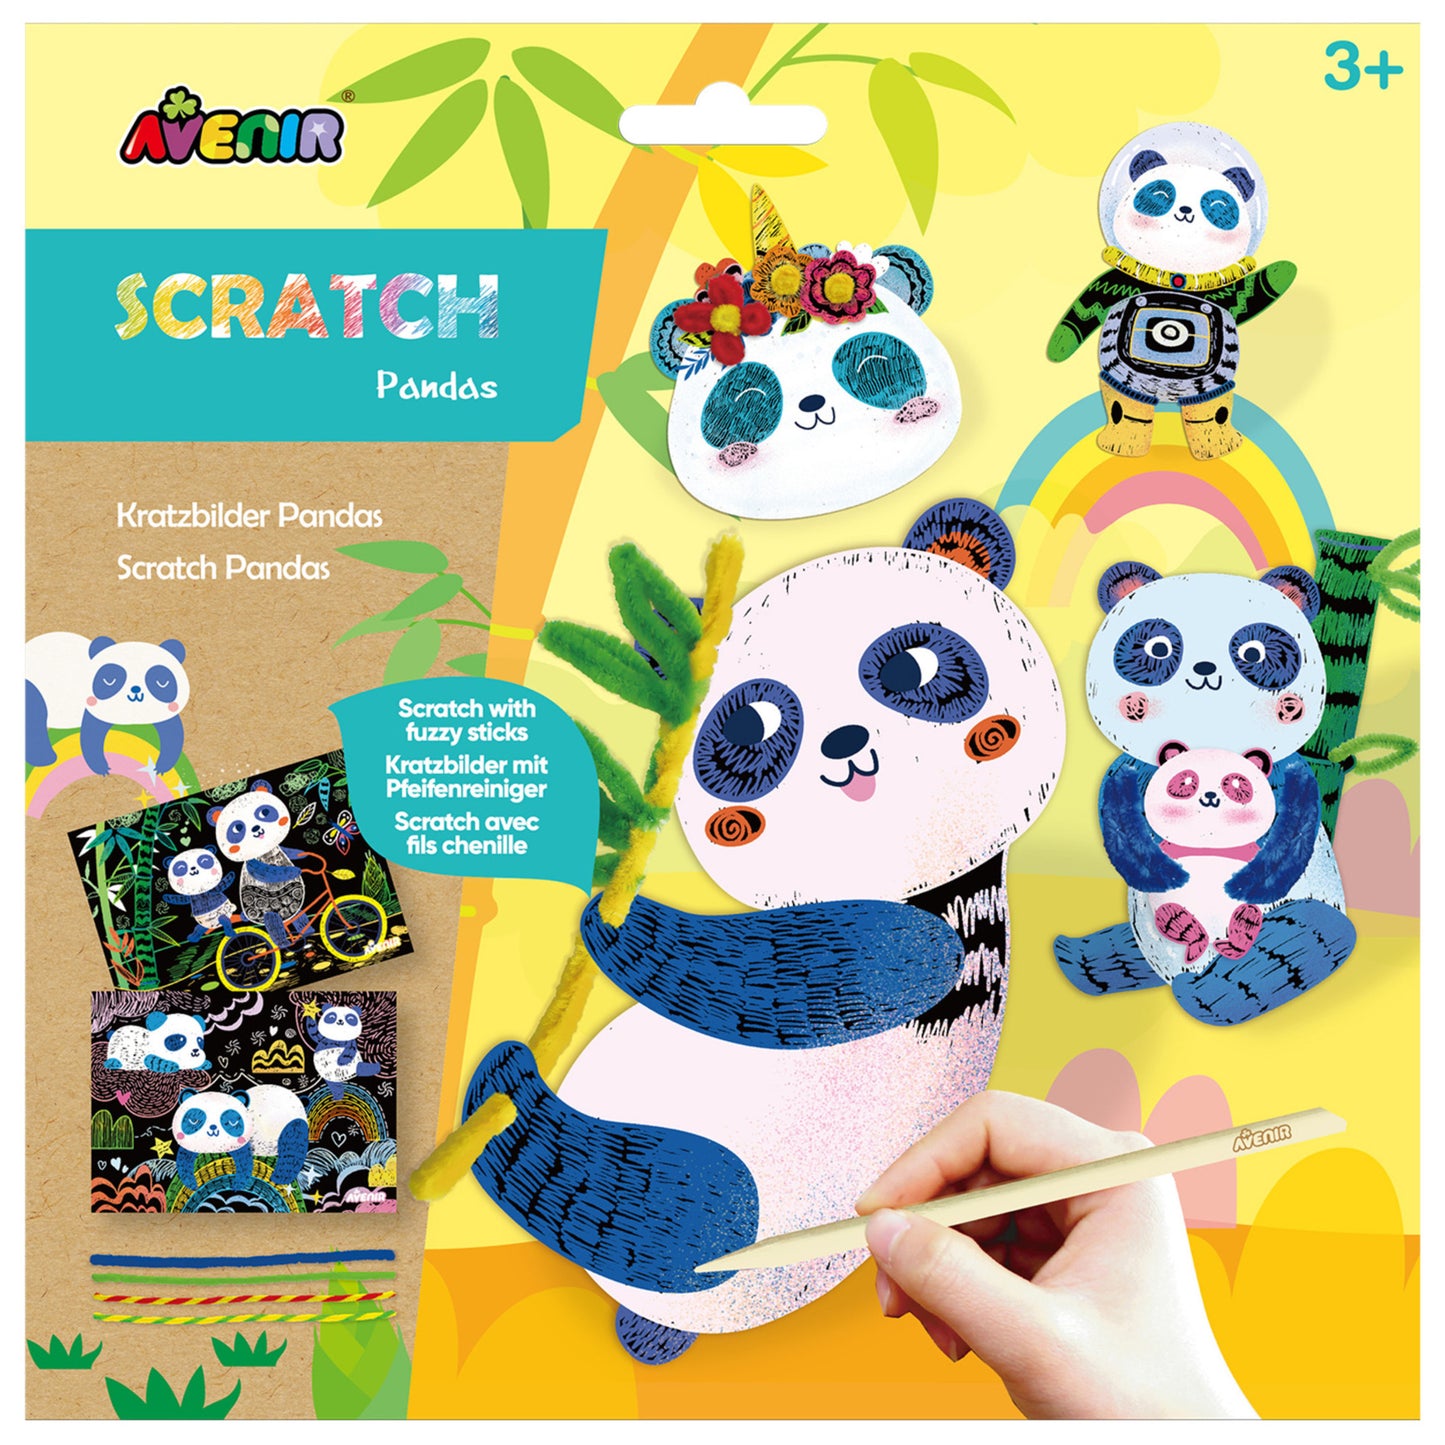 Scratch Pandas with Fuzzy Sticks